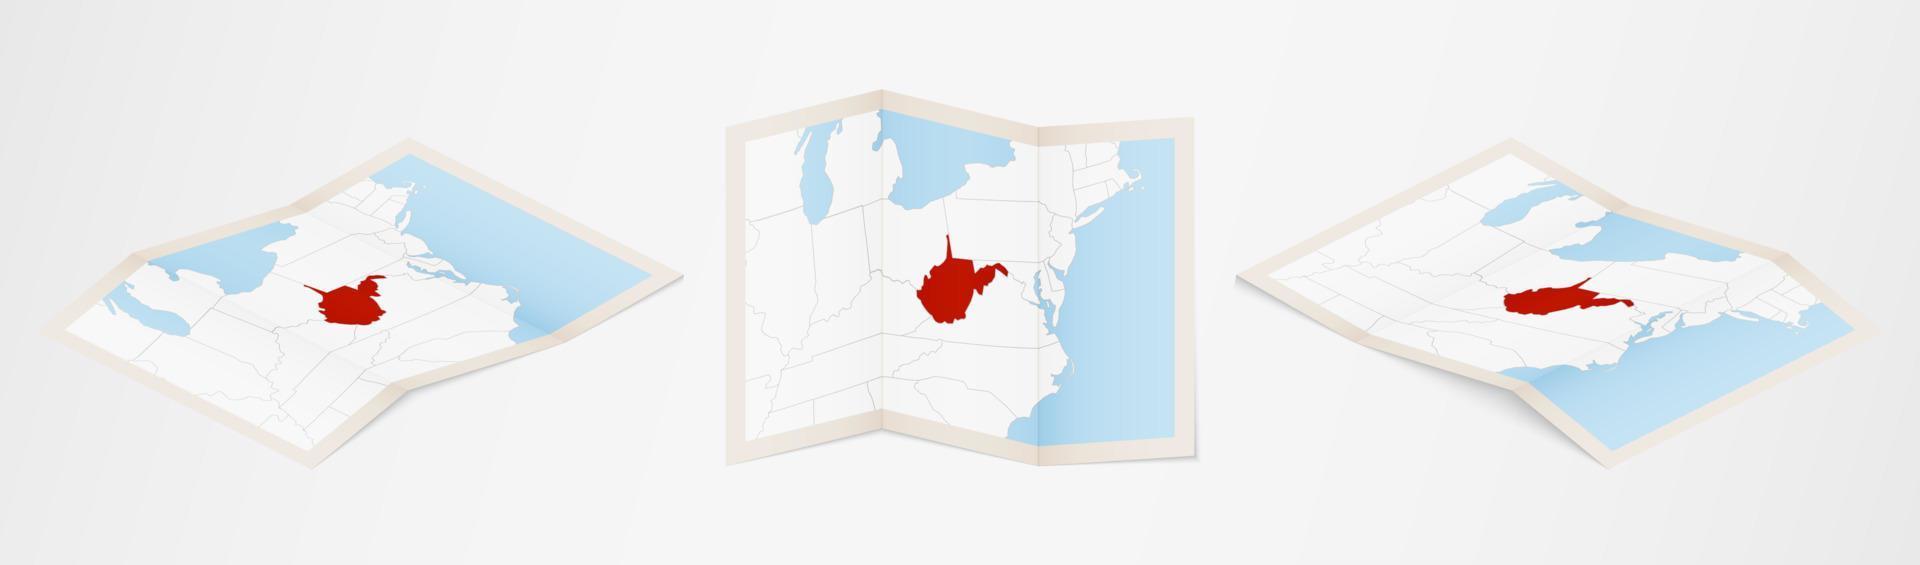 gevouwen kaart van west Virginia in drie verschillend versies. vector